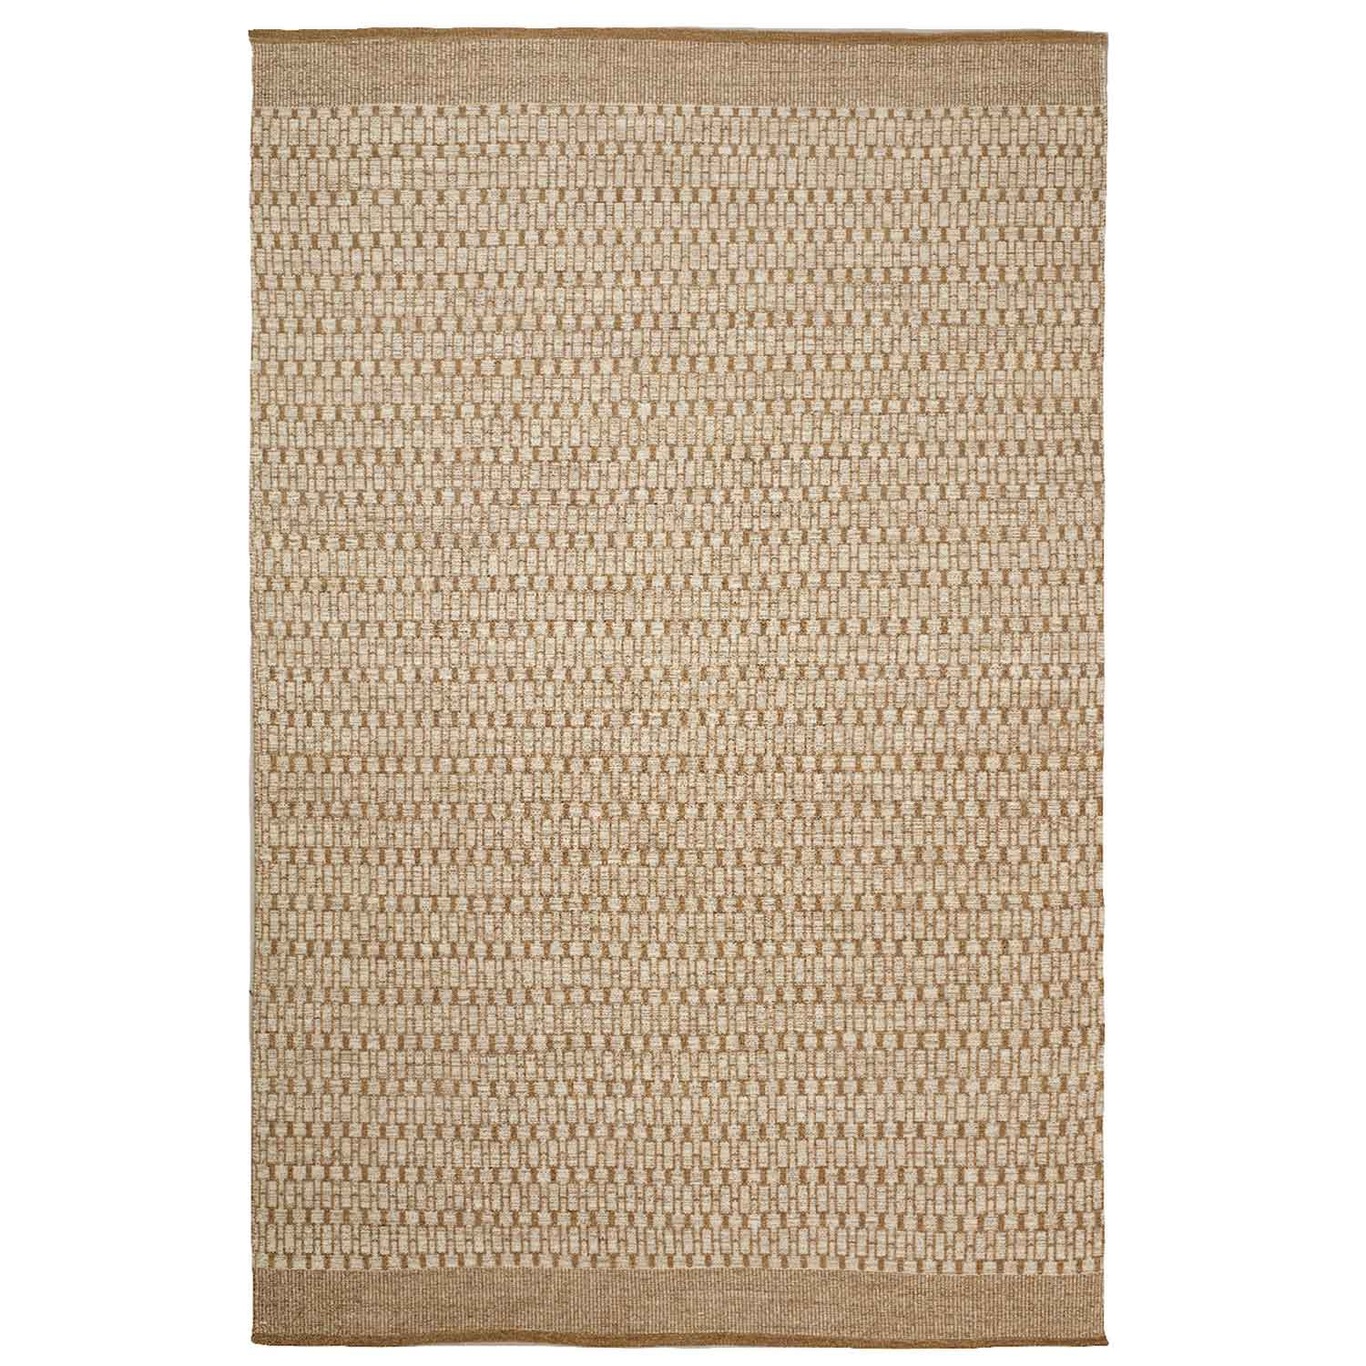 Mahi Dhurry Rug 170x240 cm, Beige/Off white